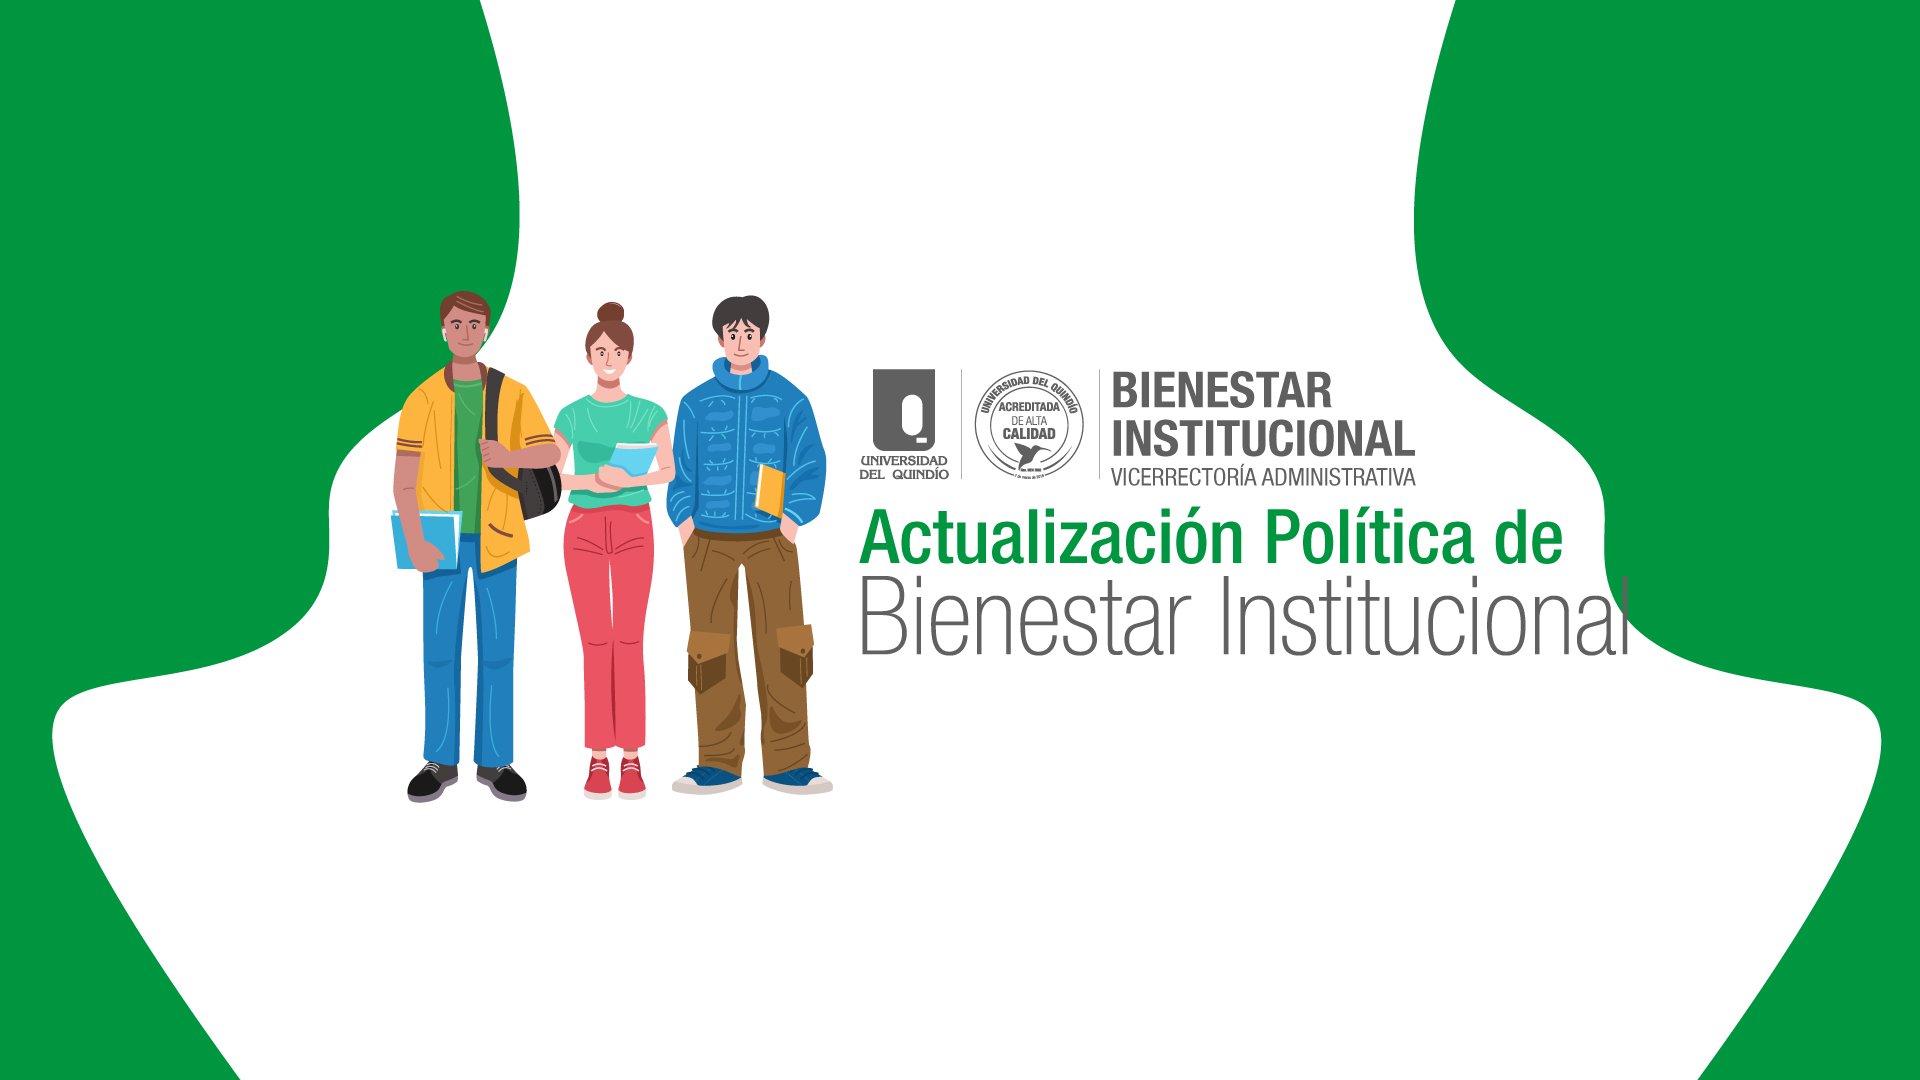 Estudiante, participa en la actualización de la Política de Bienestar Institucional